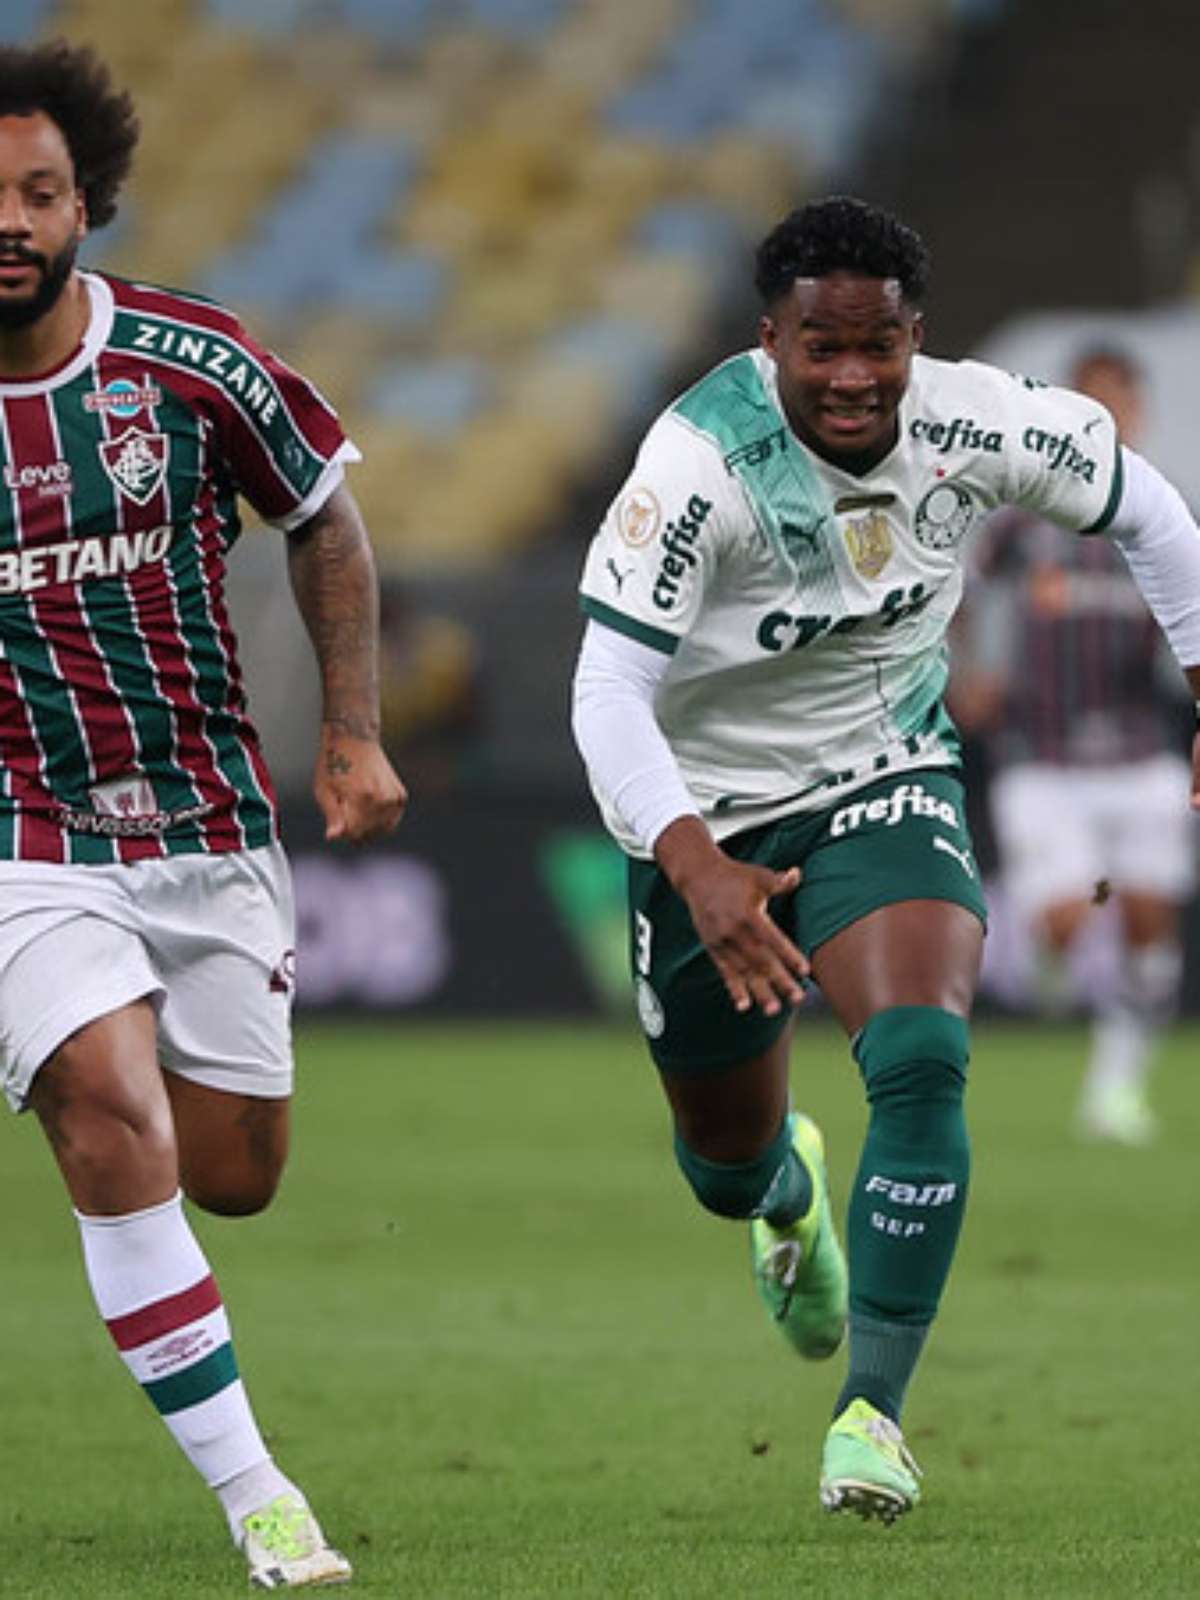 Palmeiras não vence o Fluminense pelo Campeonato Brasileiro há quatro jogos